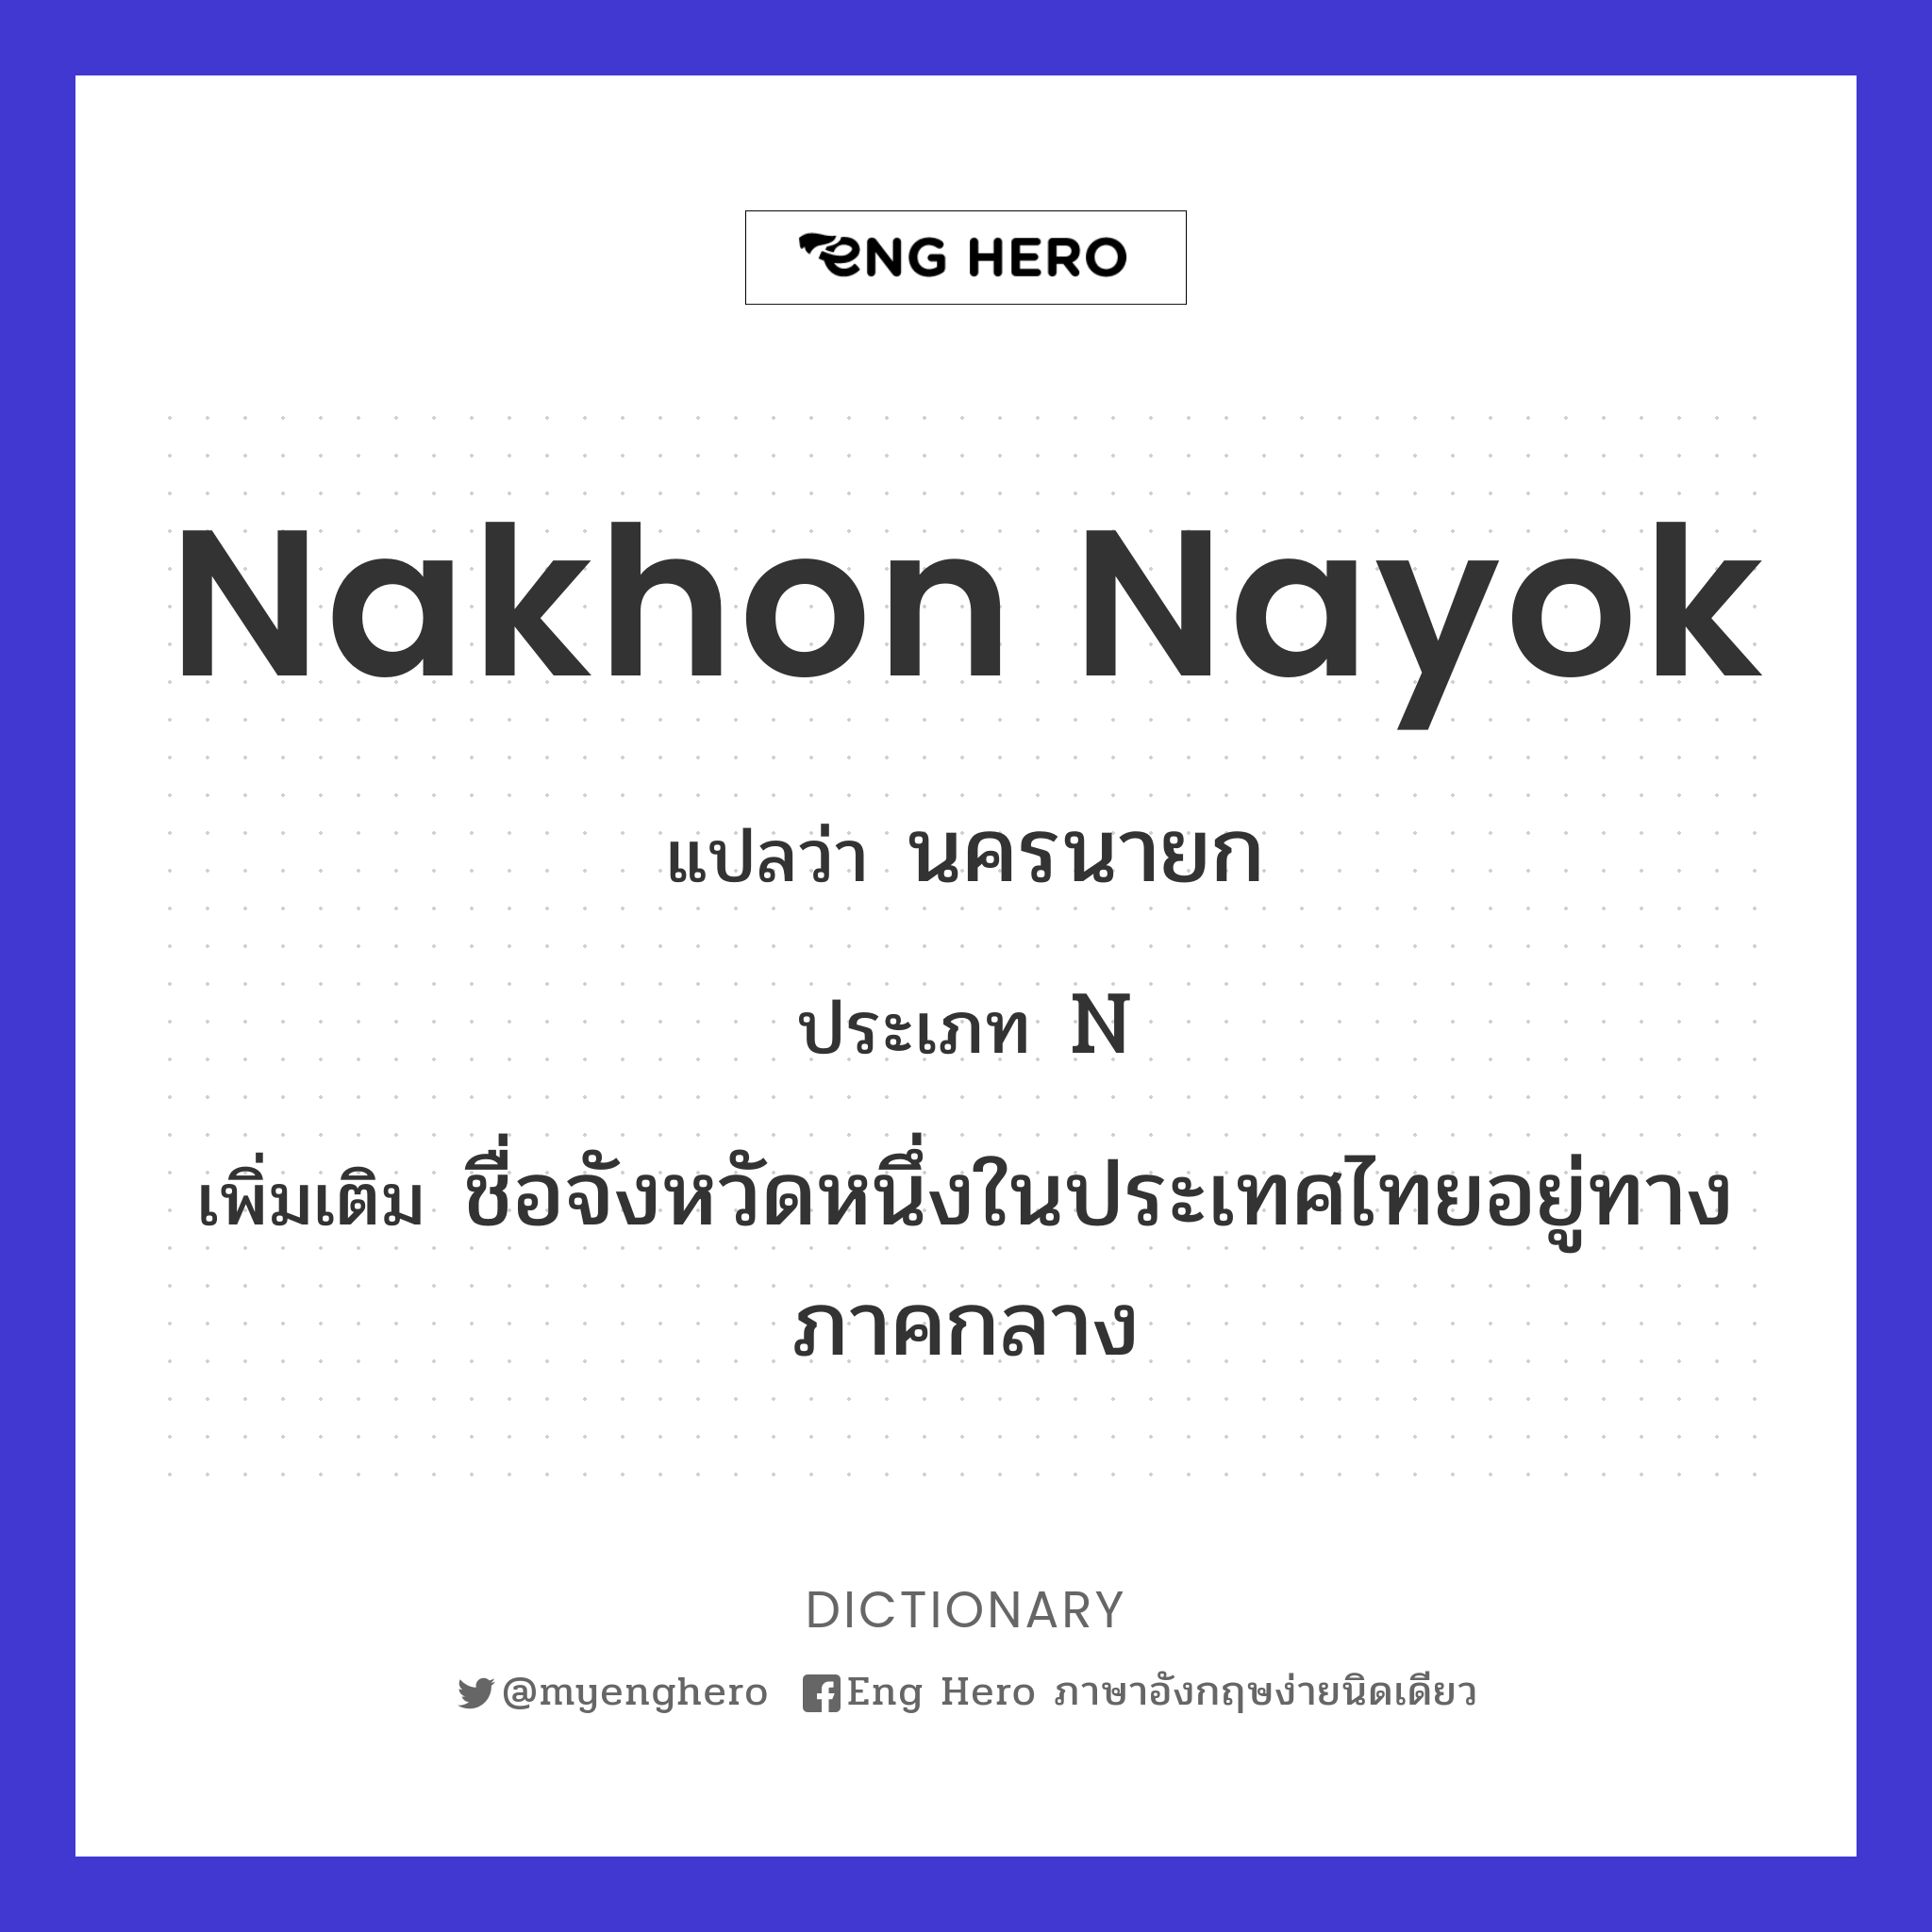 Nakhon Nayok